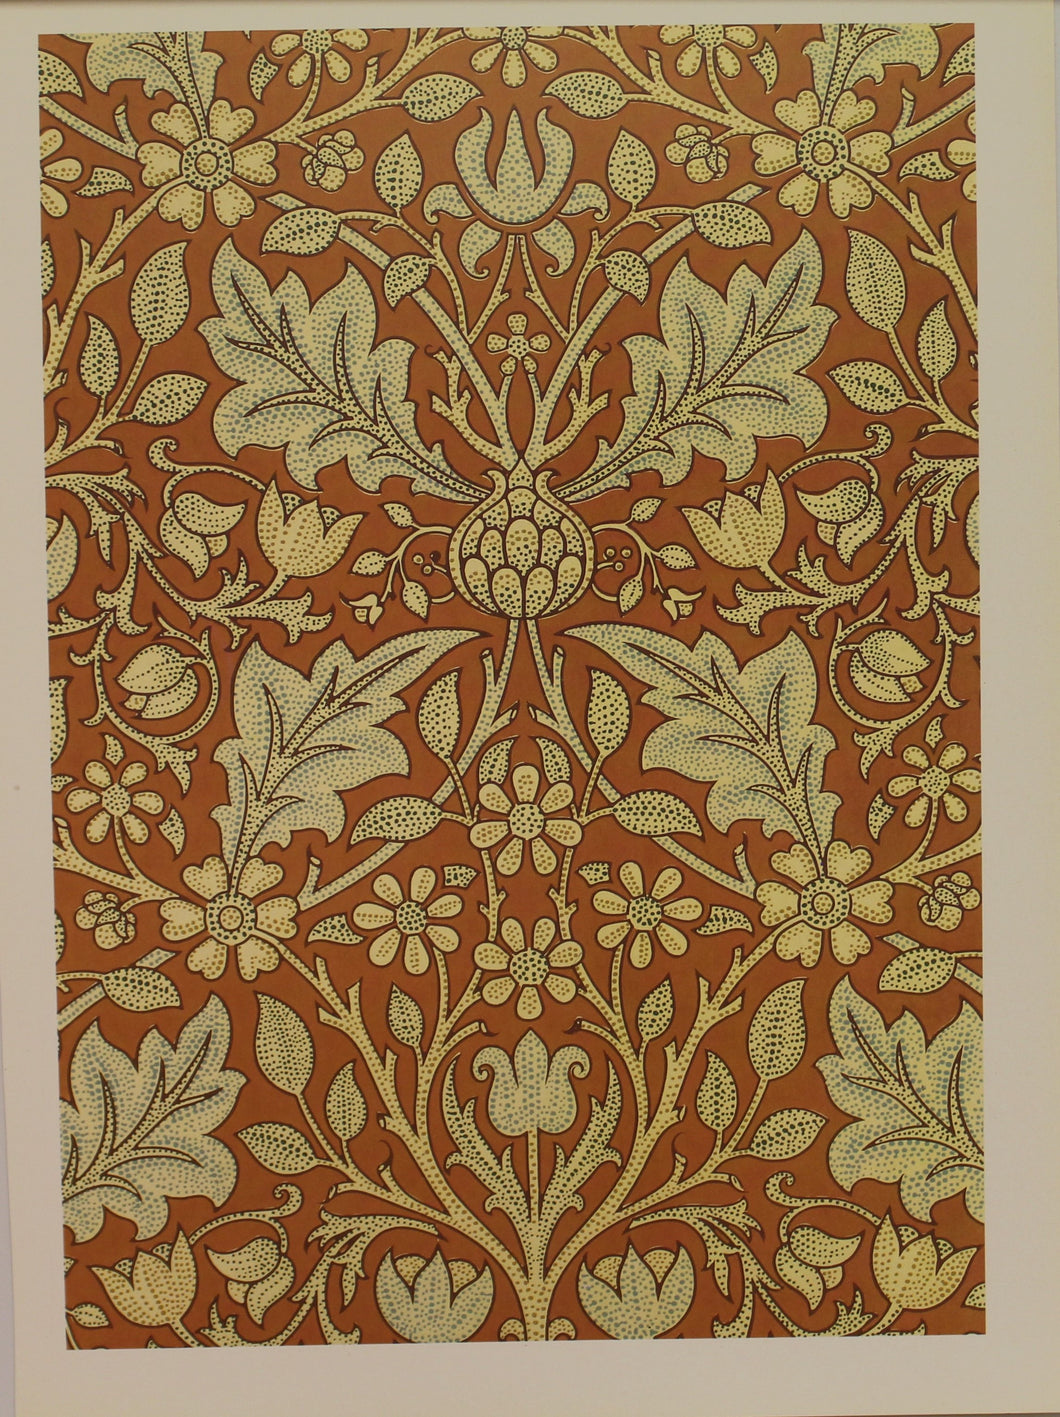 Decorator, Morris William, Wallpaper Design, Triple Net, Plate 35, Art Nouveau, c1891